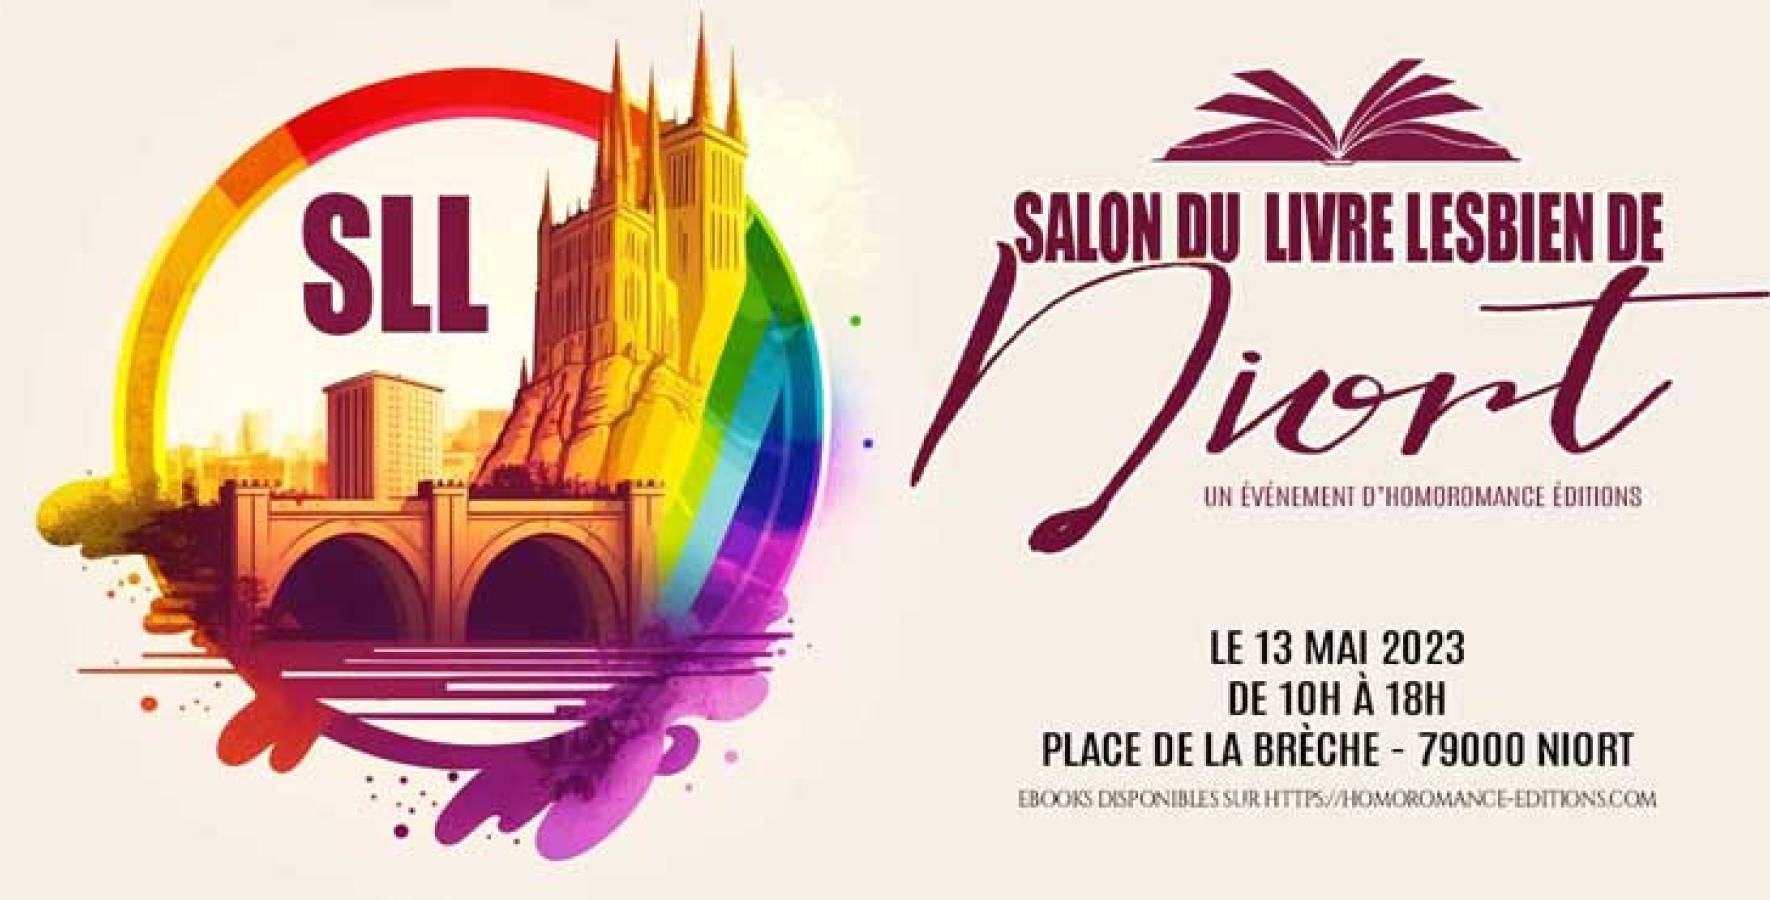 Salon du livre lesbien de Niort, le 13 mai 2023